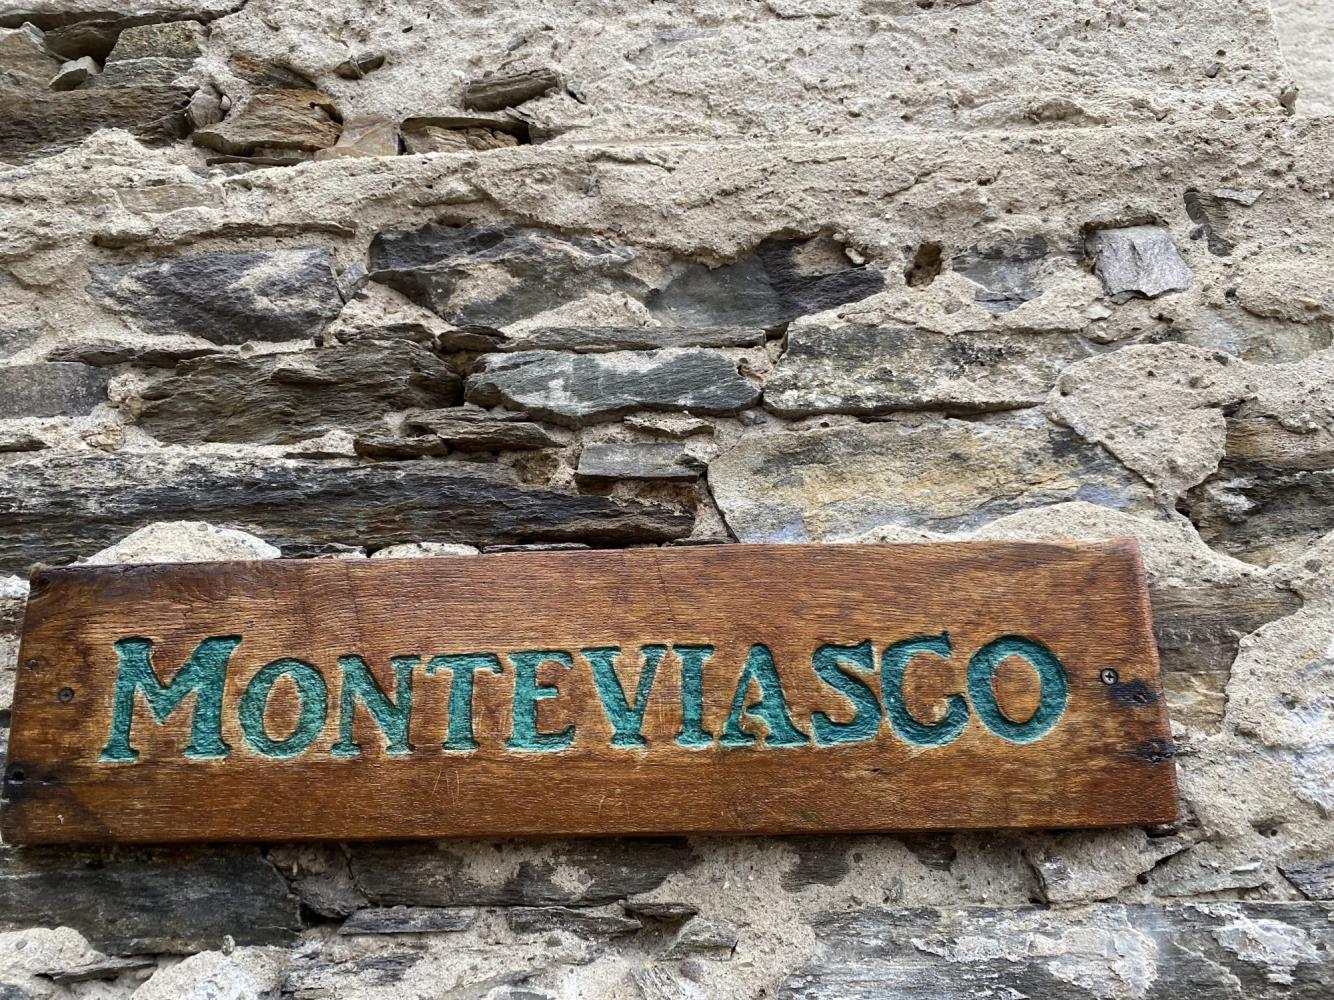 Wooden plaque in Monteviasco